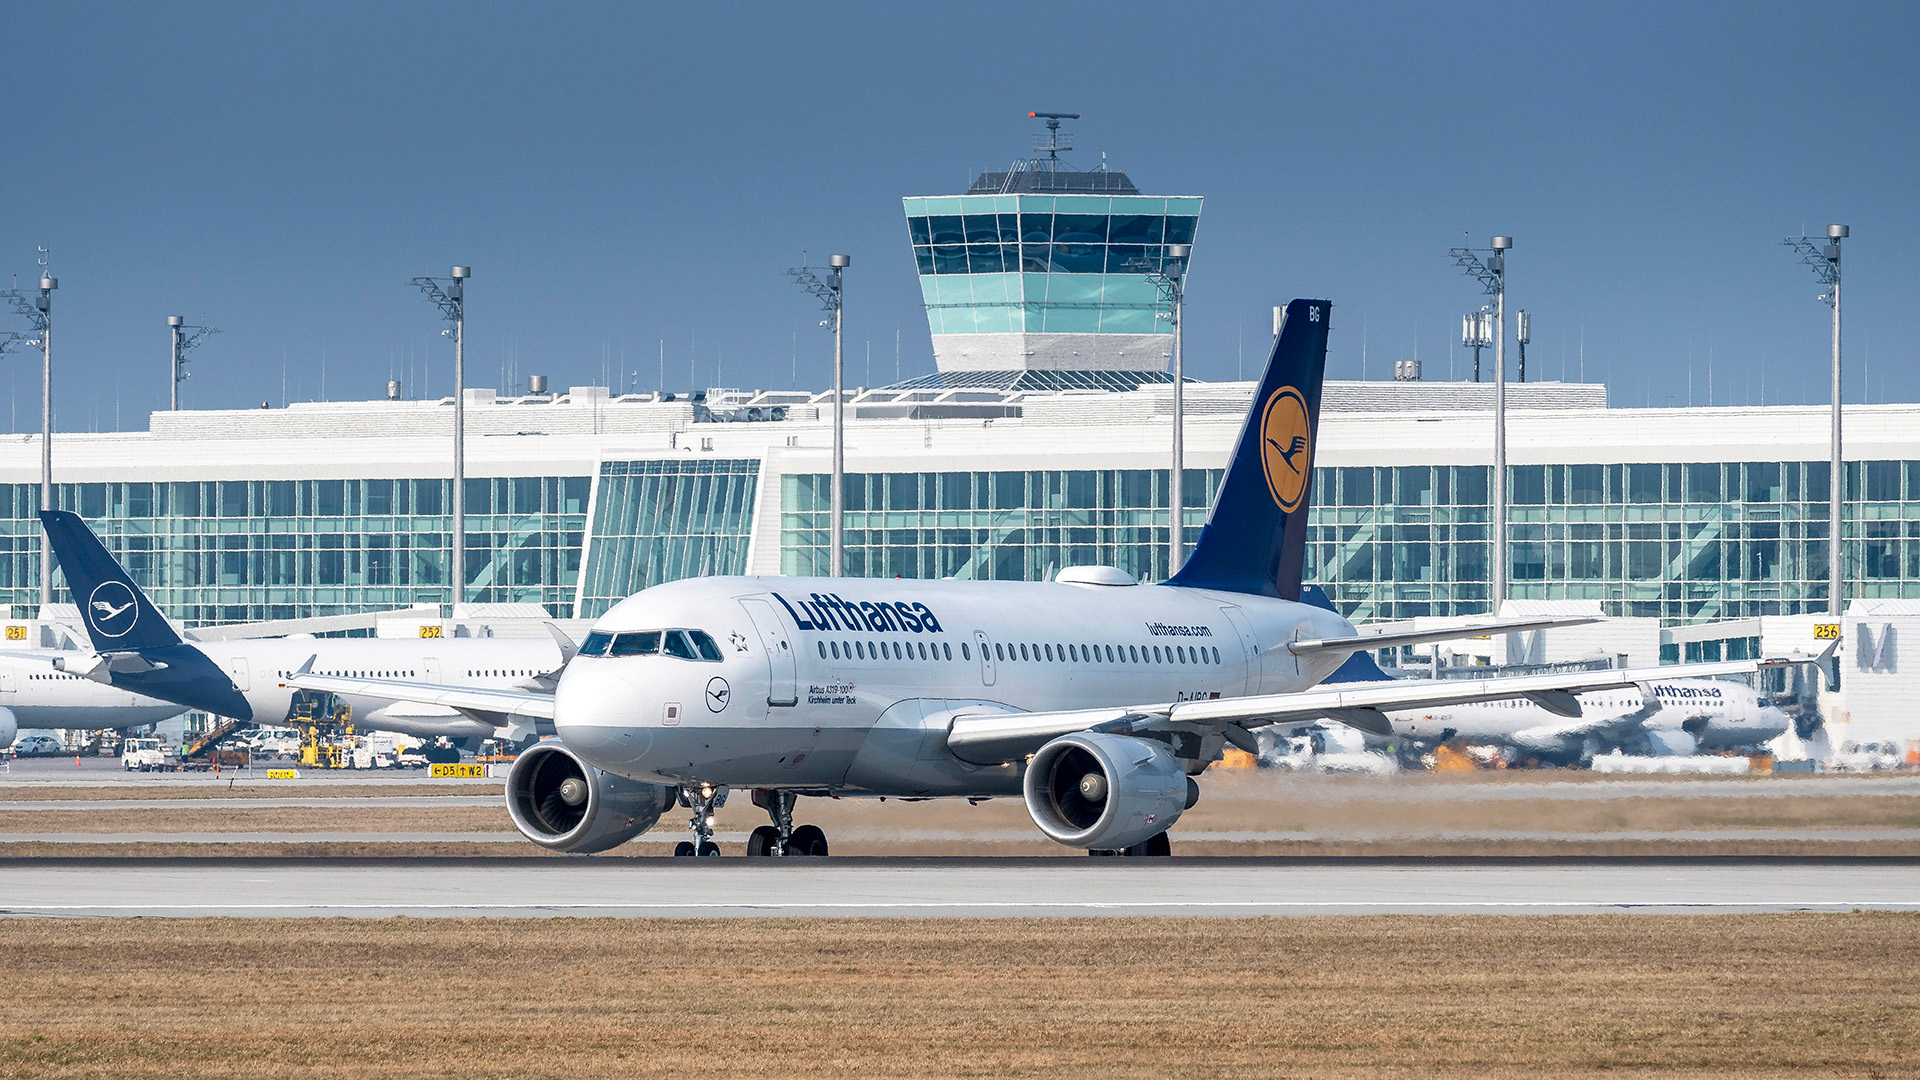 Ein A319 von Lufthansa am Flughafen in München | picture alliance